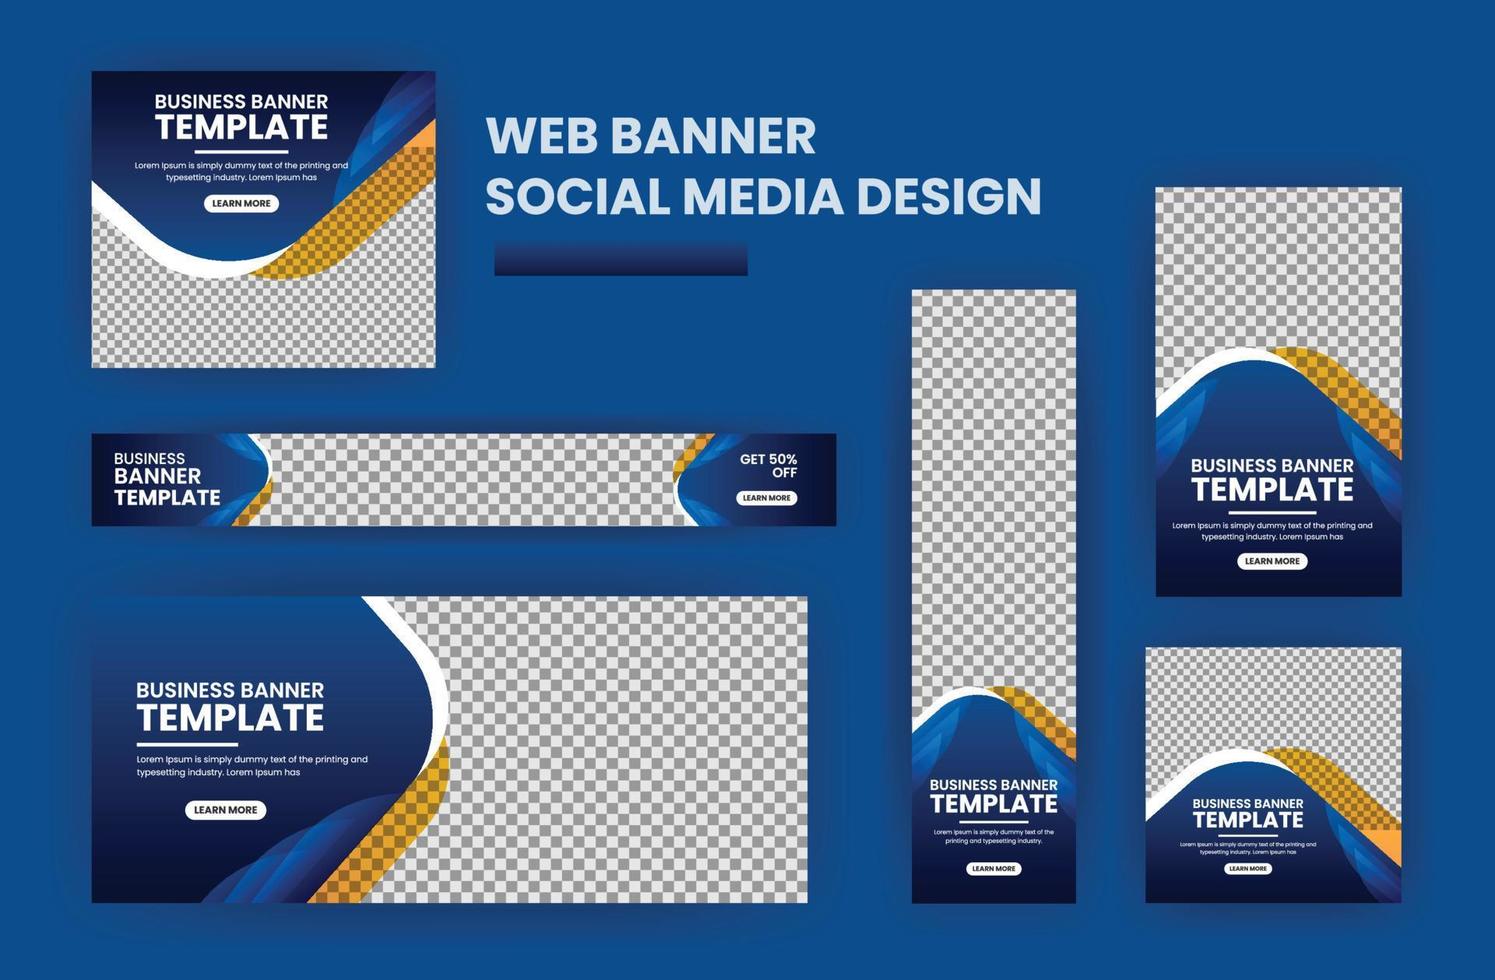 bedrijf banier web sjabloon bundel ontwerp, sociaal media Hoes advertenties banier, folder, uitnodiging kaart vector